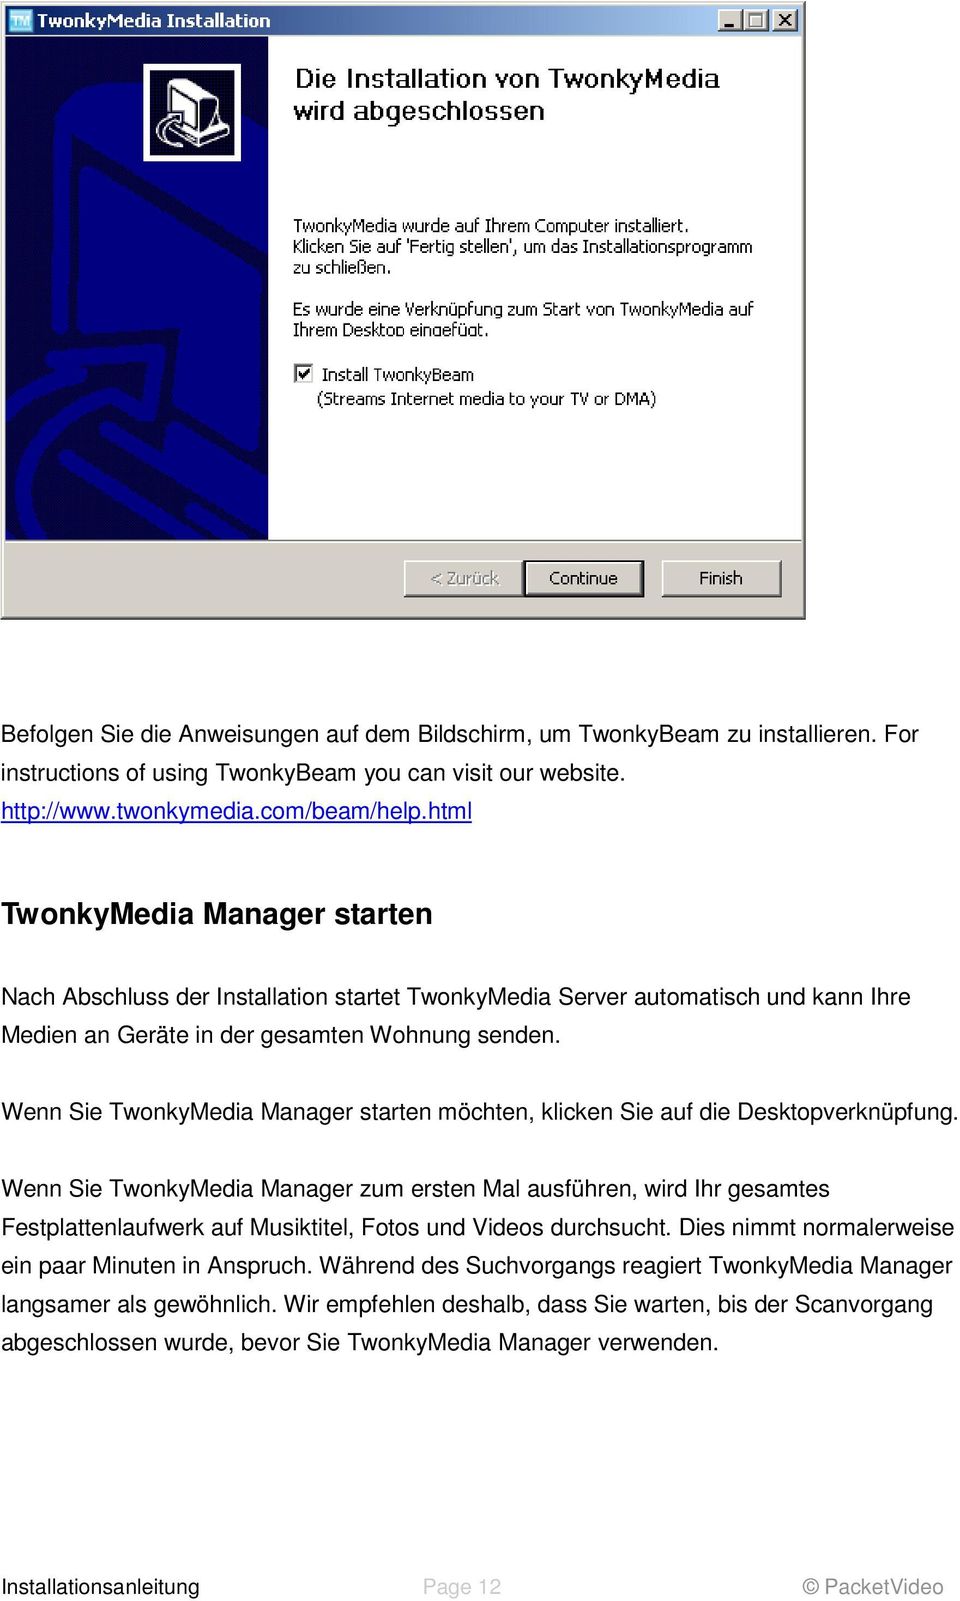 Wenn Sie TwonkyMedia Manager starten möchten, klicken Sie auf die Desktopverknüpfung.